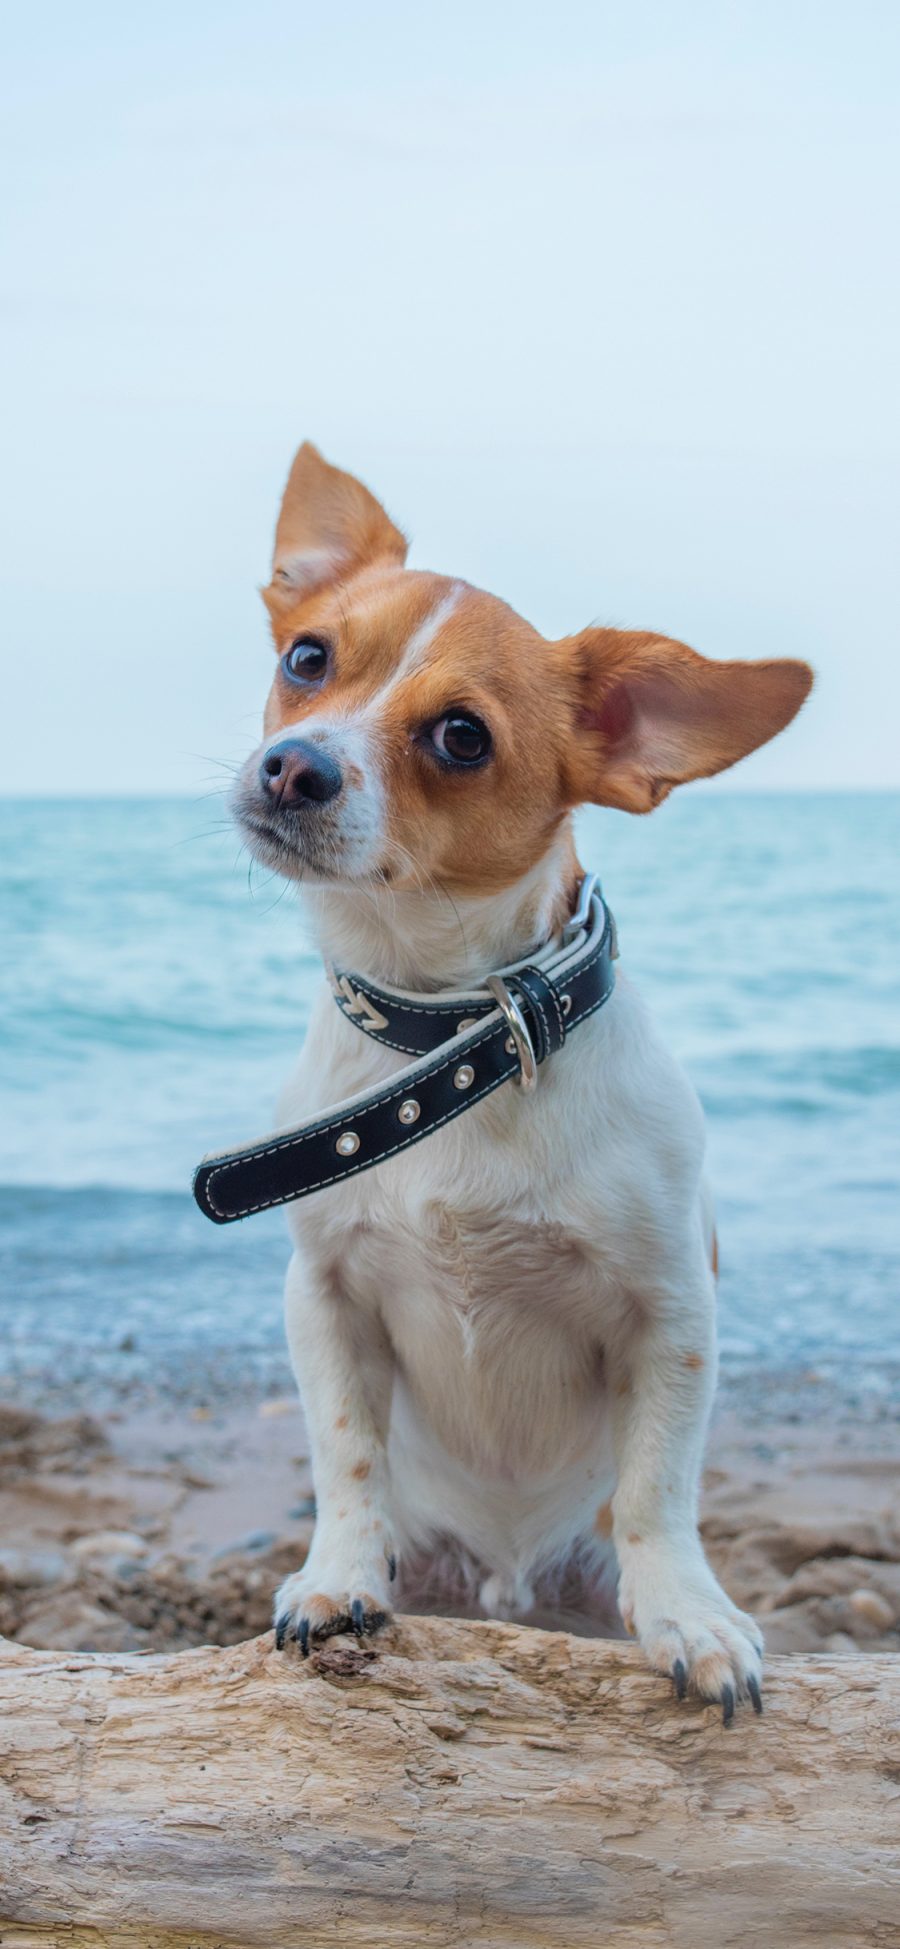 [2436×1125]海边 宠物狗 写真 可爱 吉娃娃 苹果手机壁纸图片